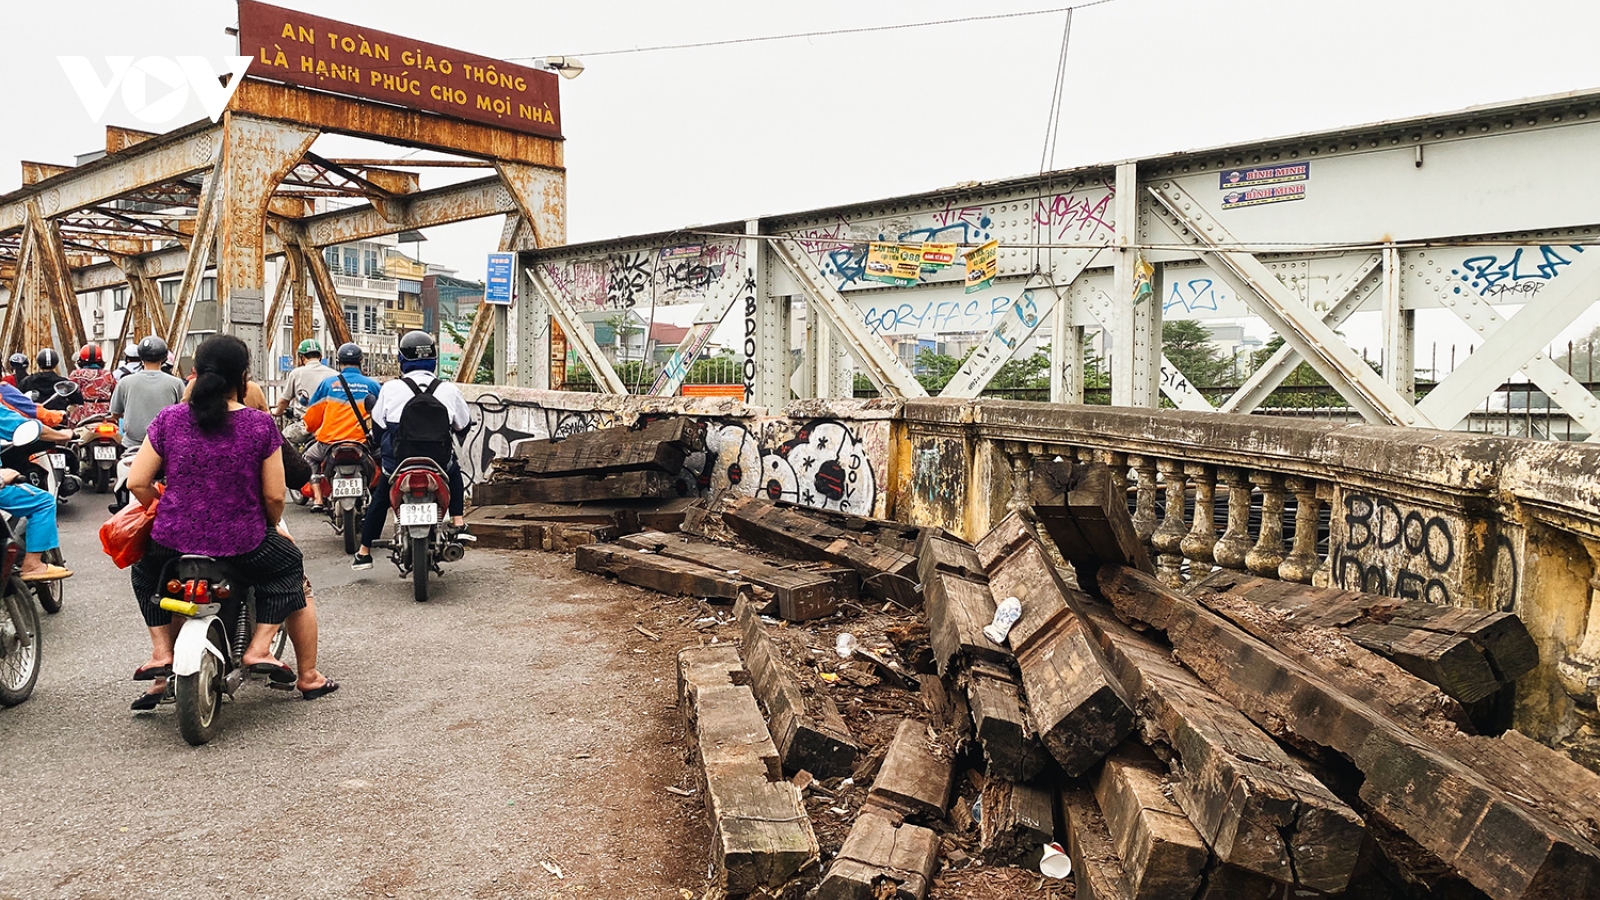 Cần sớm sửa chữa cầu Long Biên để đảm bảo an toàn cho người lưu thông qua cầu